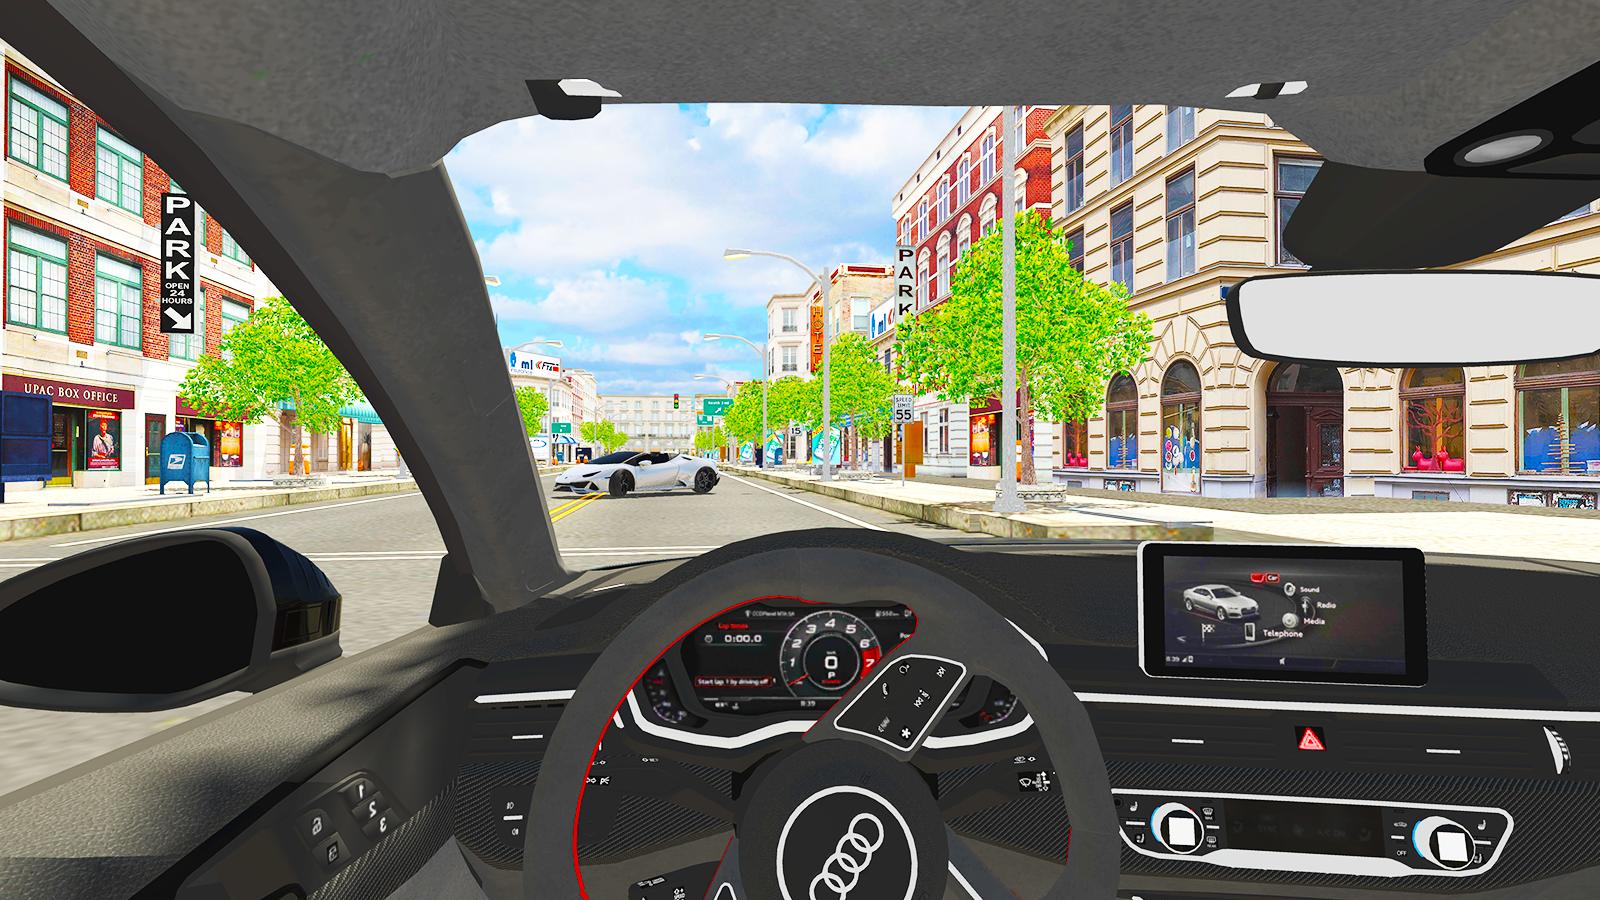 Ucds car driving simulator. Драйв симулятор 2. Самый реалистичный российский симулятор вождения в мире. Симулятор бортового компьютера.